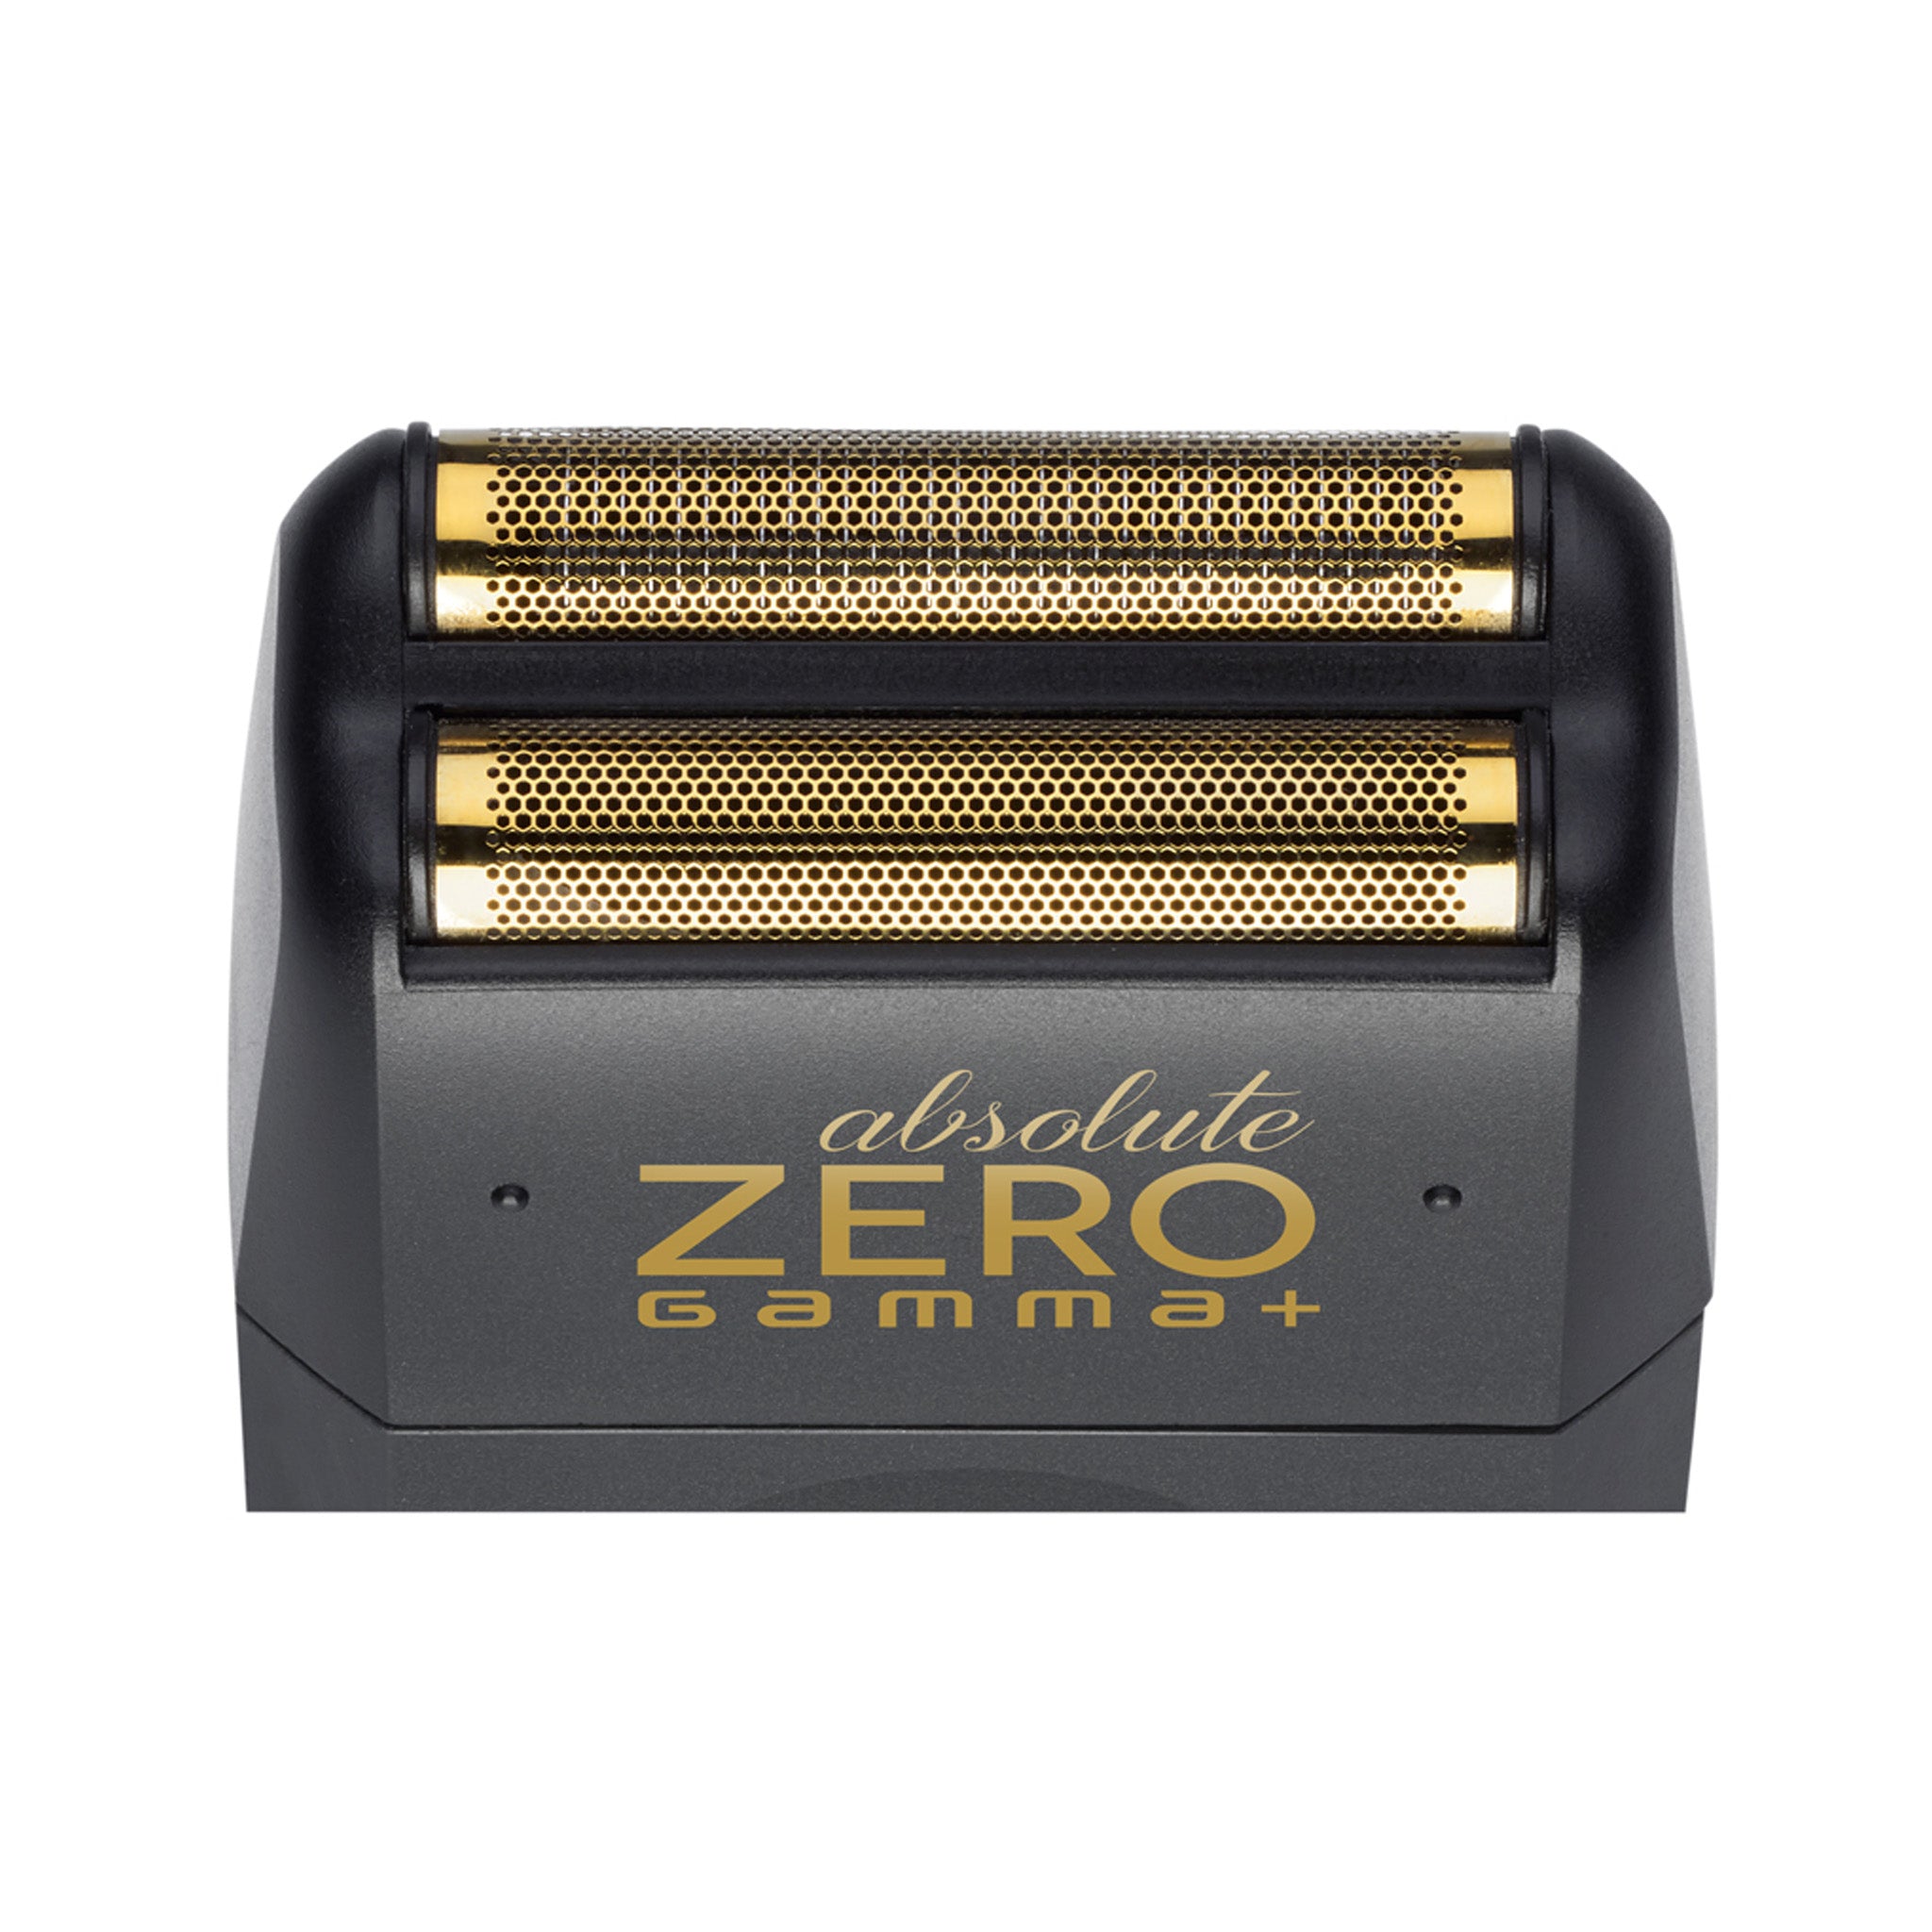 Gamma+ Absolute Zero Foil Shaver